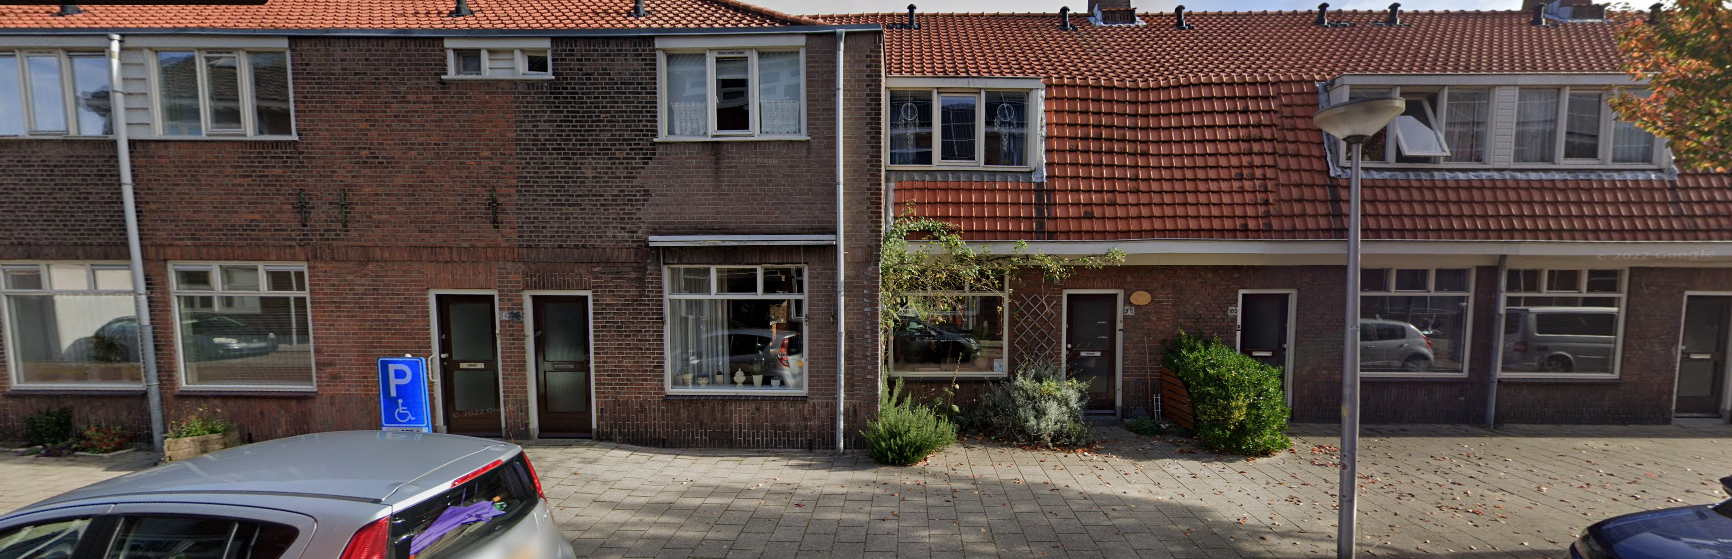 Prins Mauritsstraat 96, 2628 SW Delft, Nederland